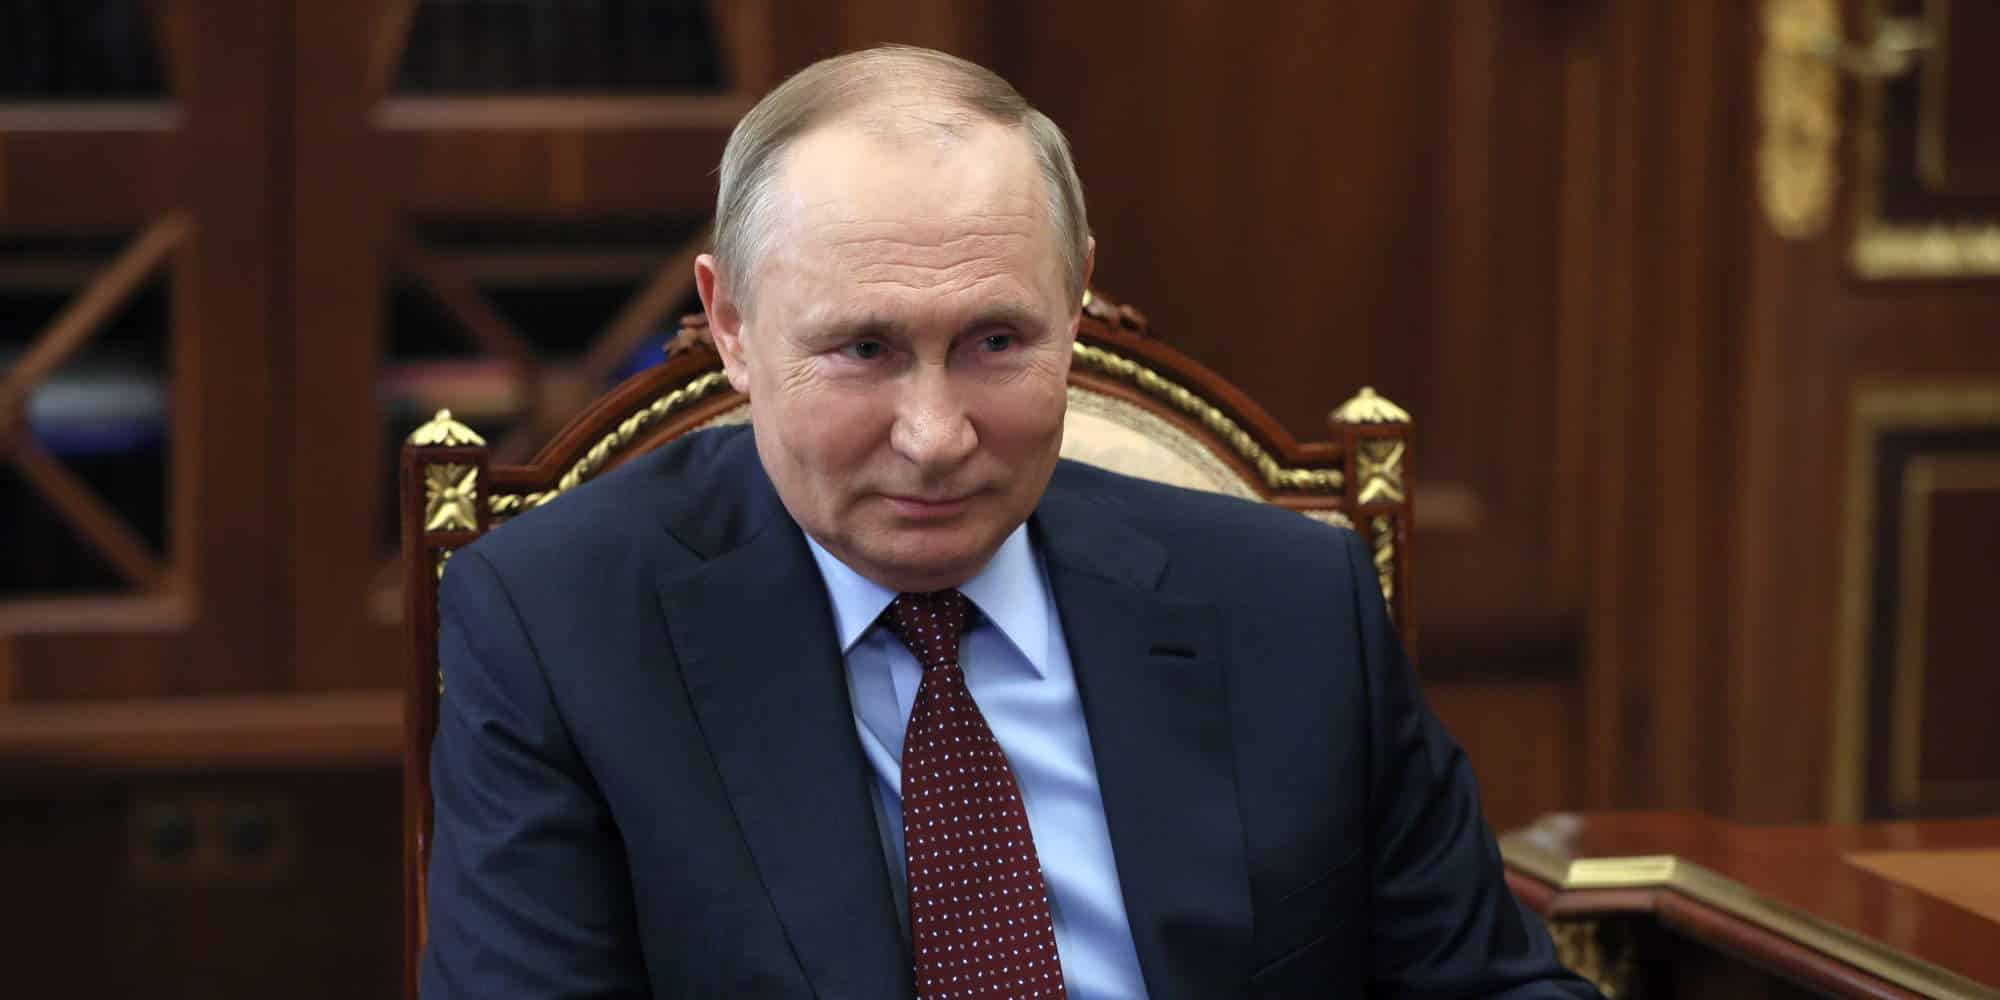 Ο Ρώσος πρόεδρος Βλαντιμίρ Πούτιν